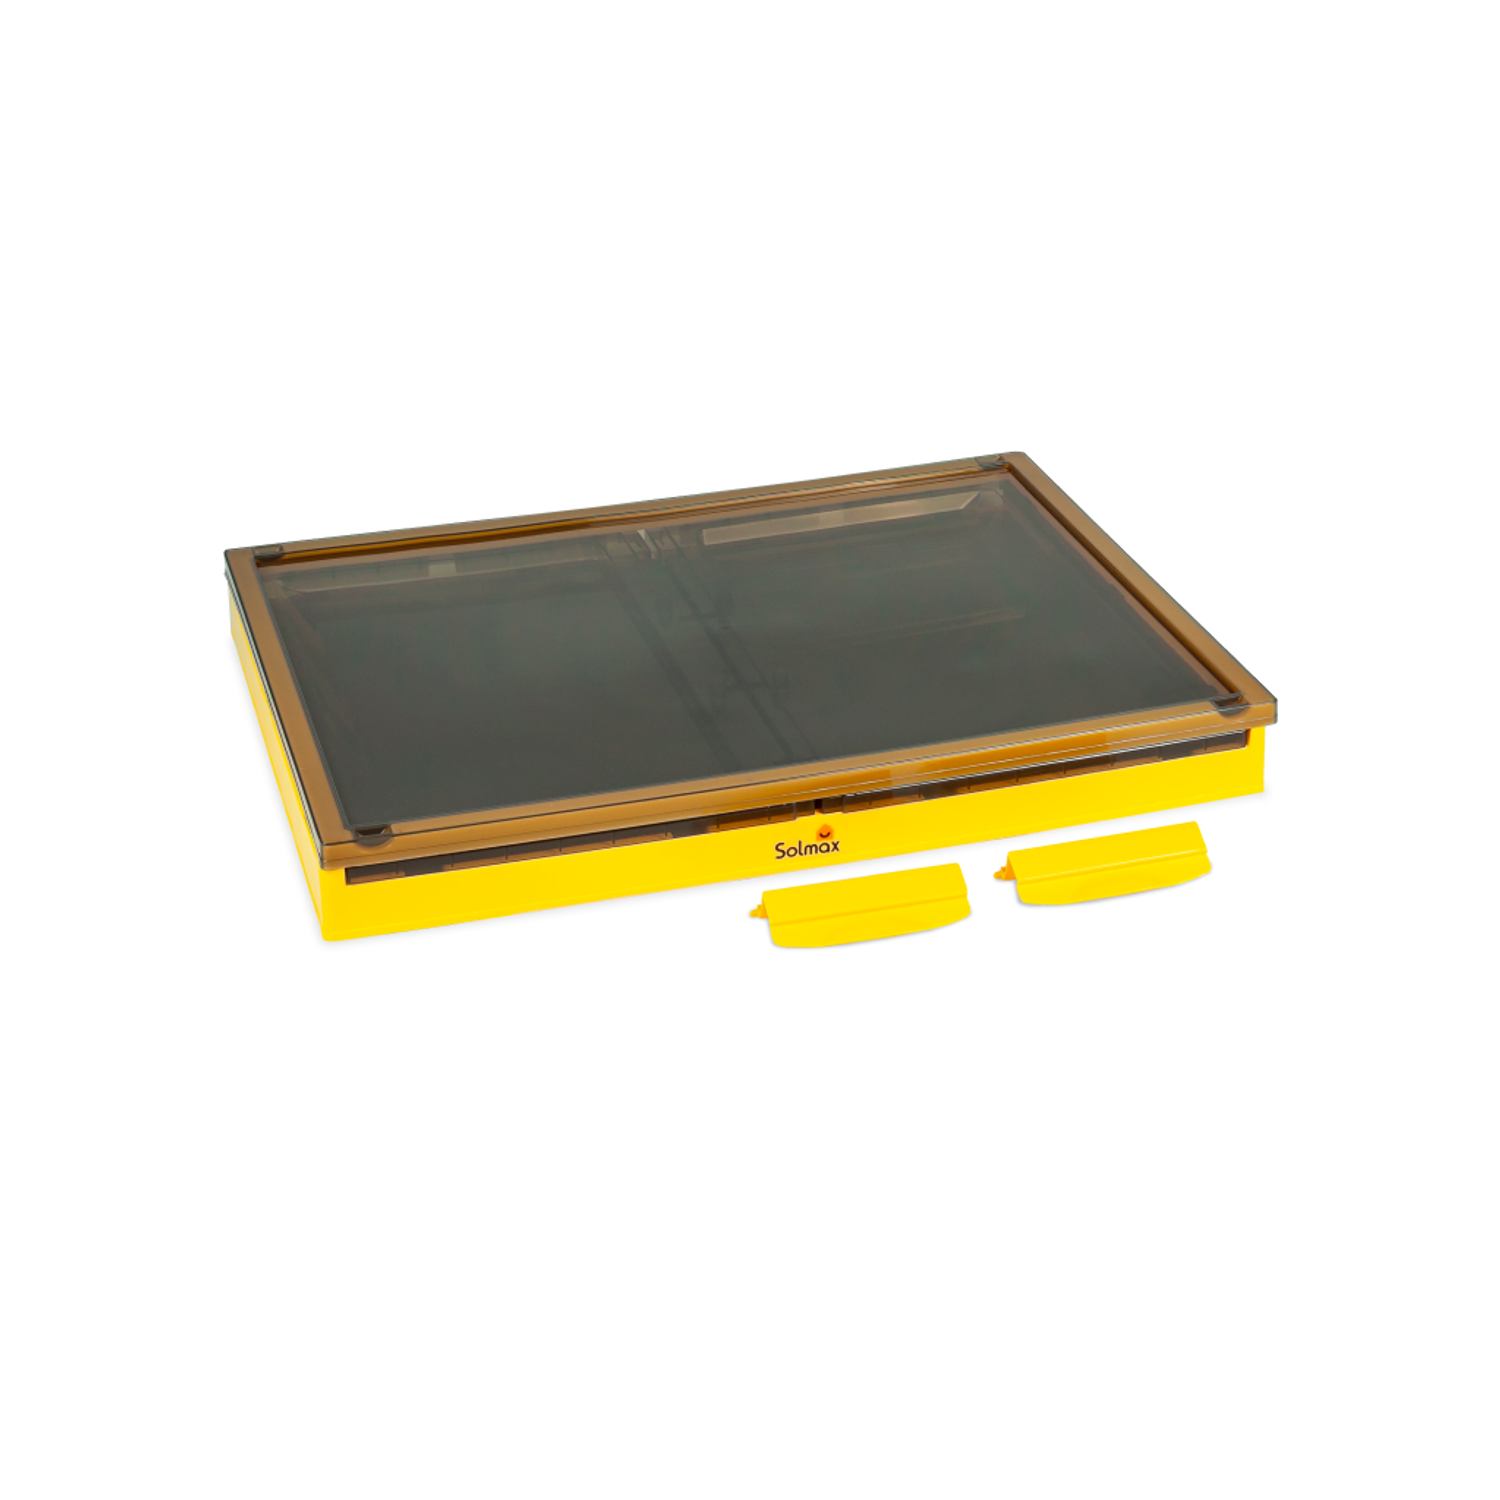 Ящик для хранения вещей Solmax прозрачный контейнер крышкой на колесах 68х47х38 желтый - фото 5